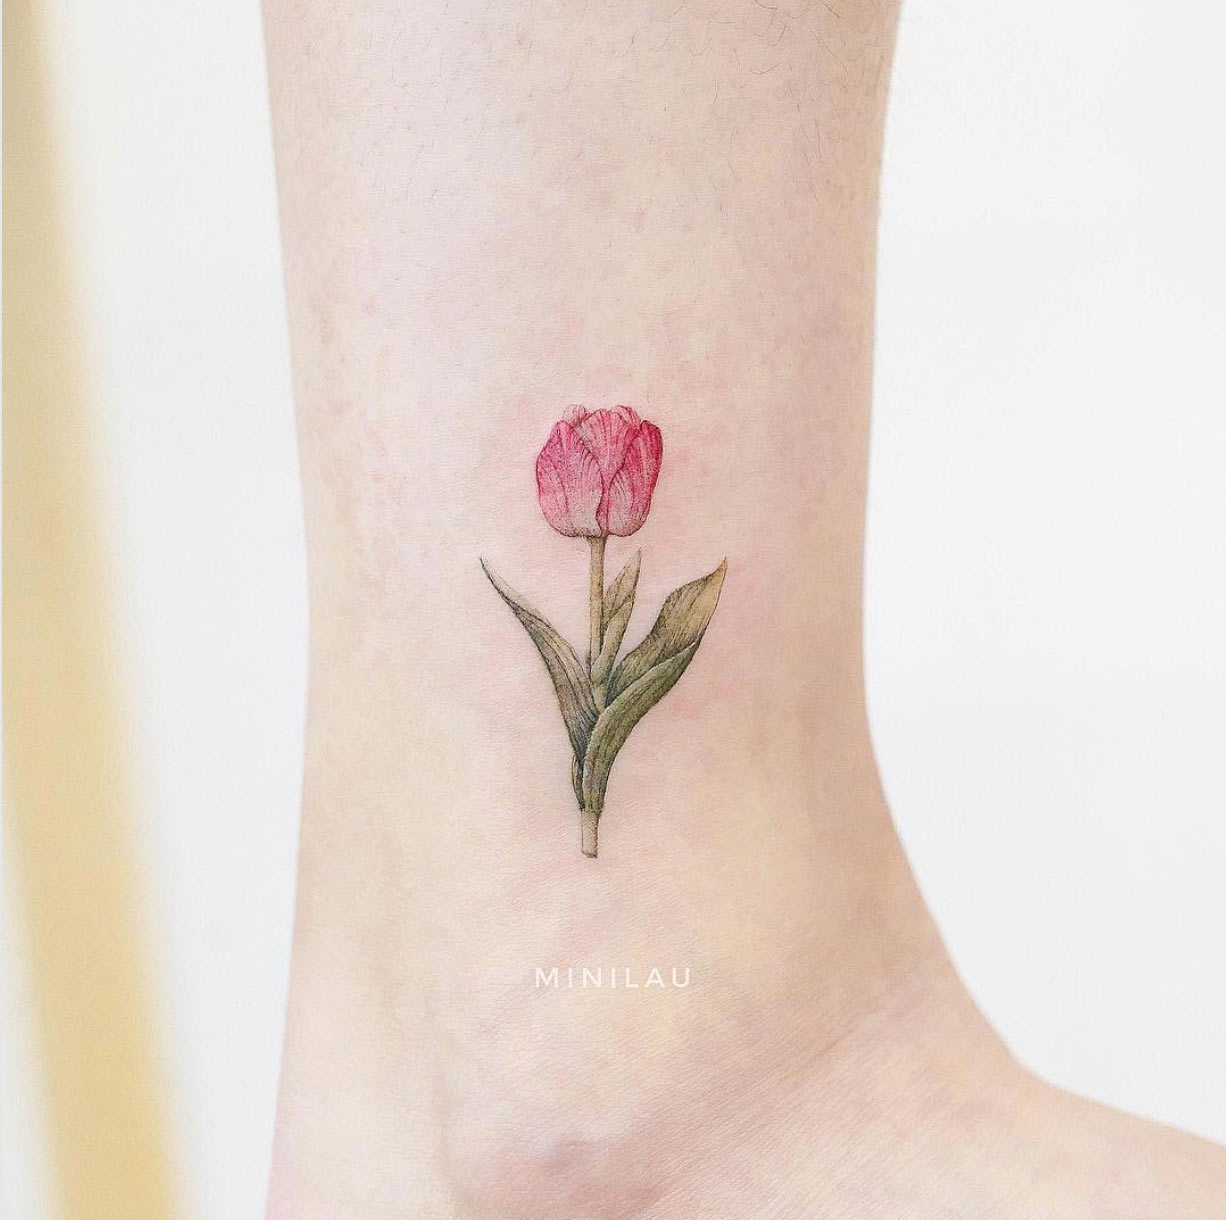 A tulip by Mini Lau